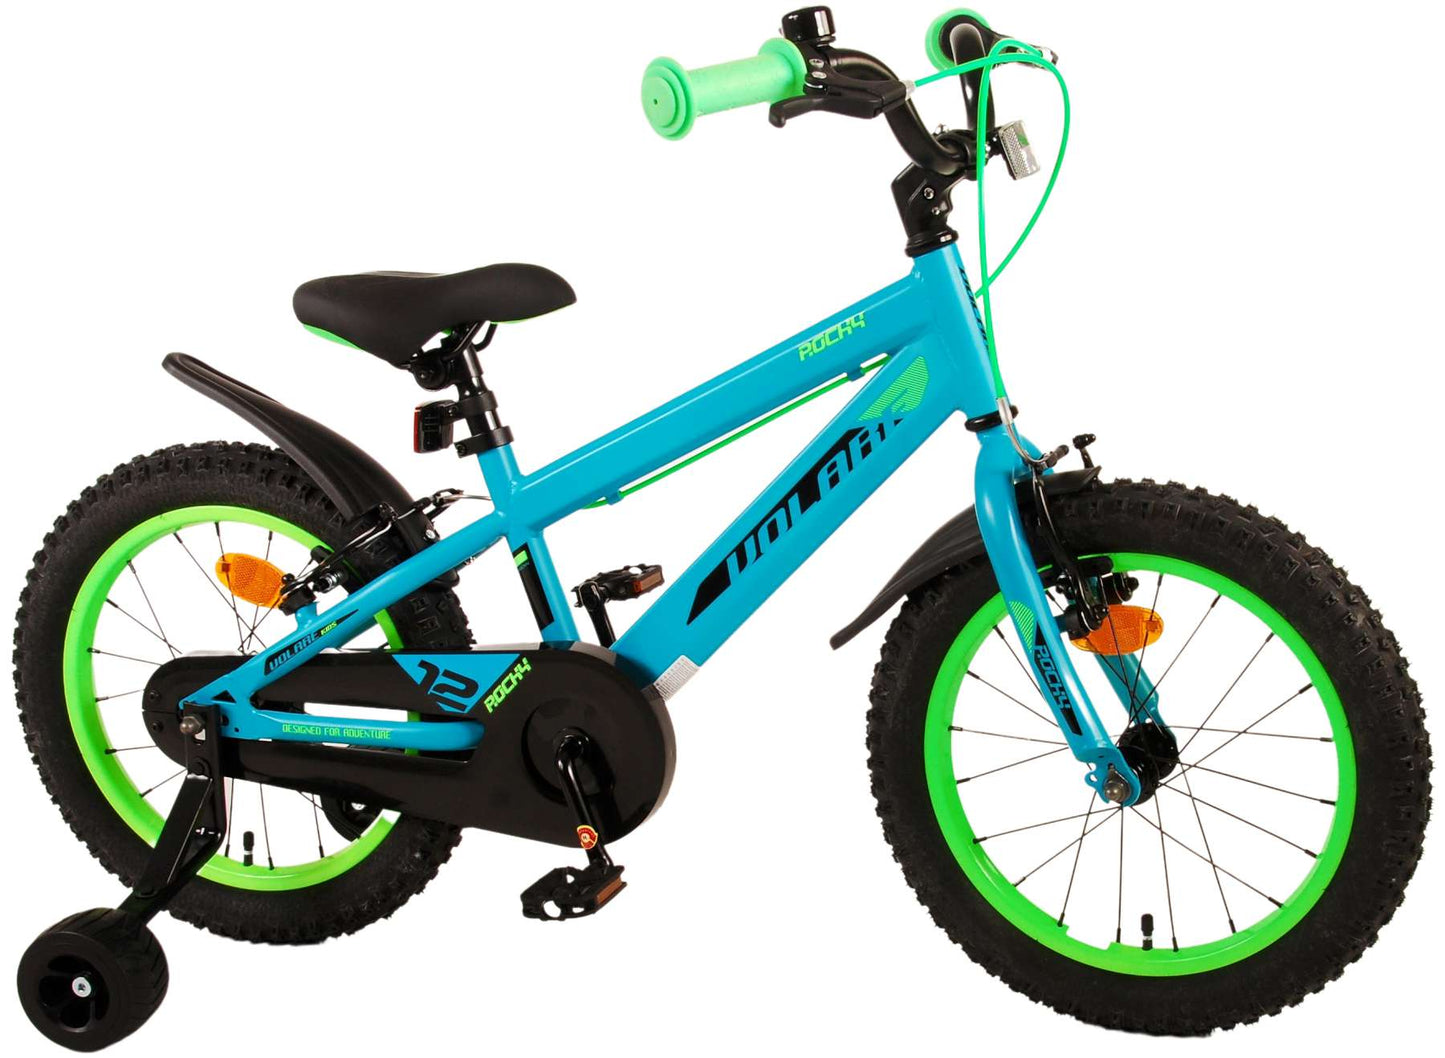 Bicicleta para niños Rocky Rocky - Niños - 16 pulgadas - Verde - Dos frenos de mano